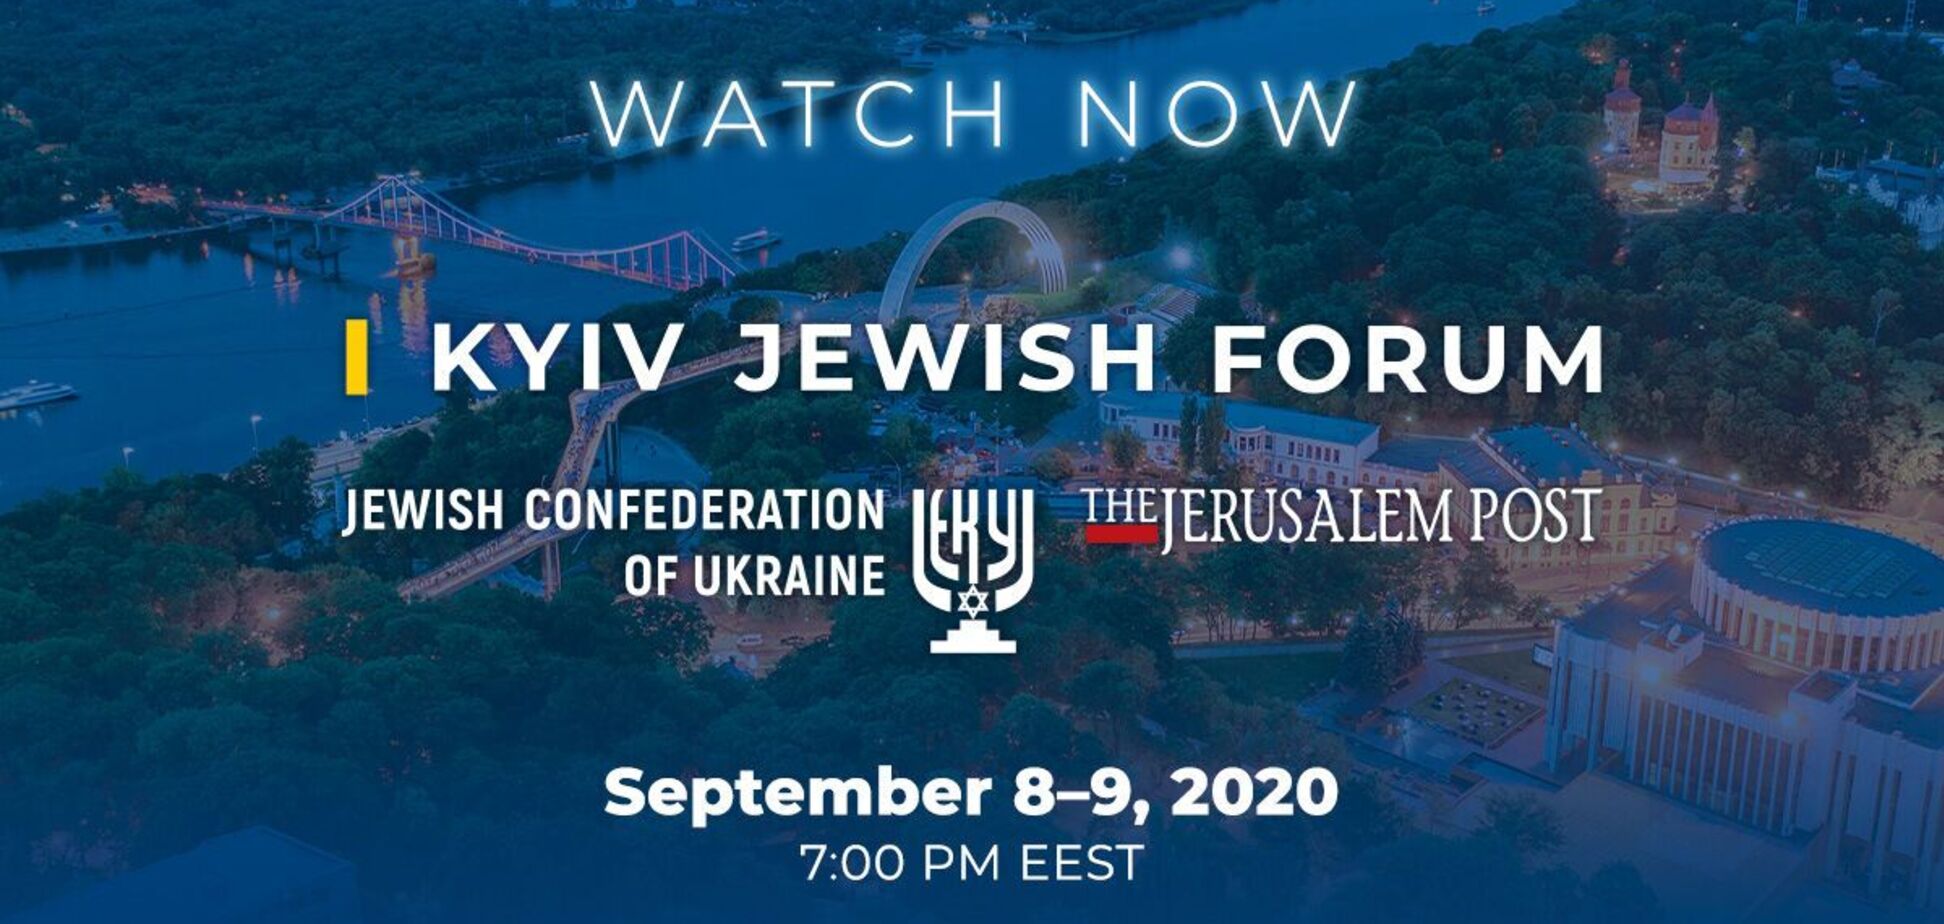 Kyiv Jewish Forum в 2020 году пройдет в режиме онлайн, – Ложкин